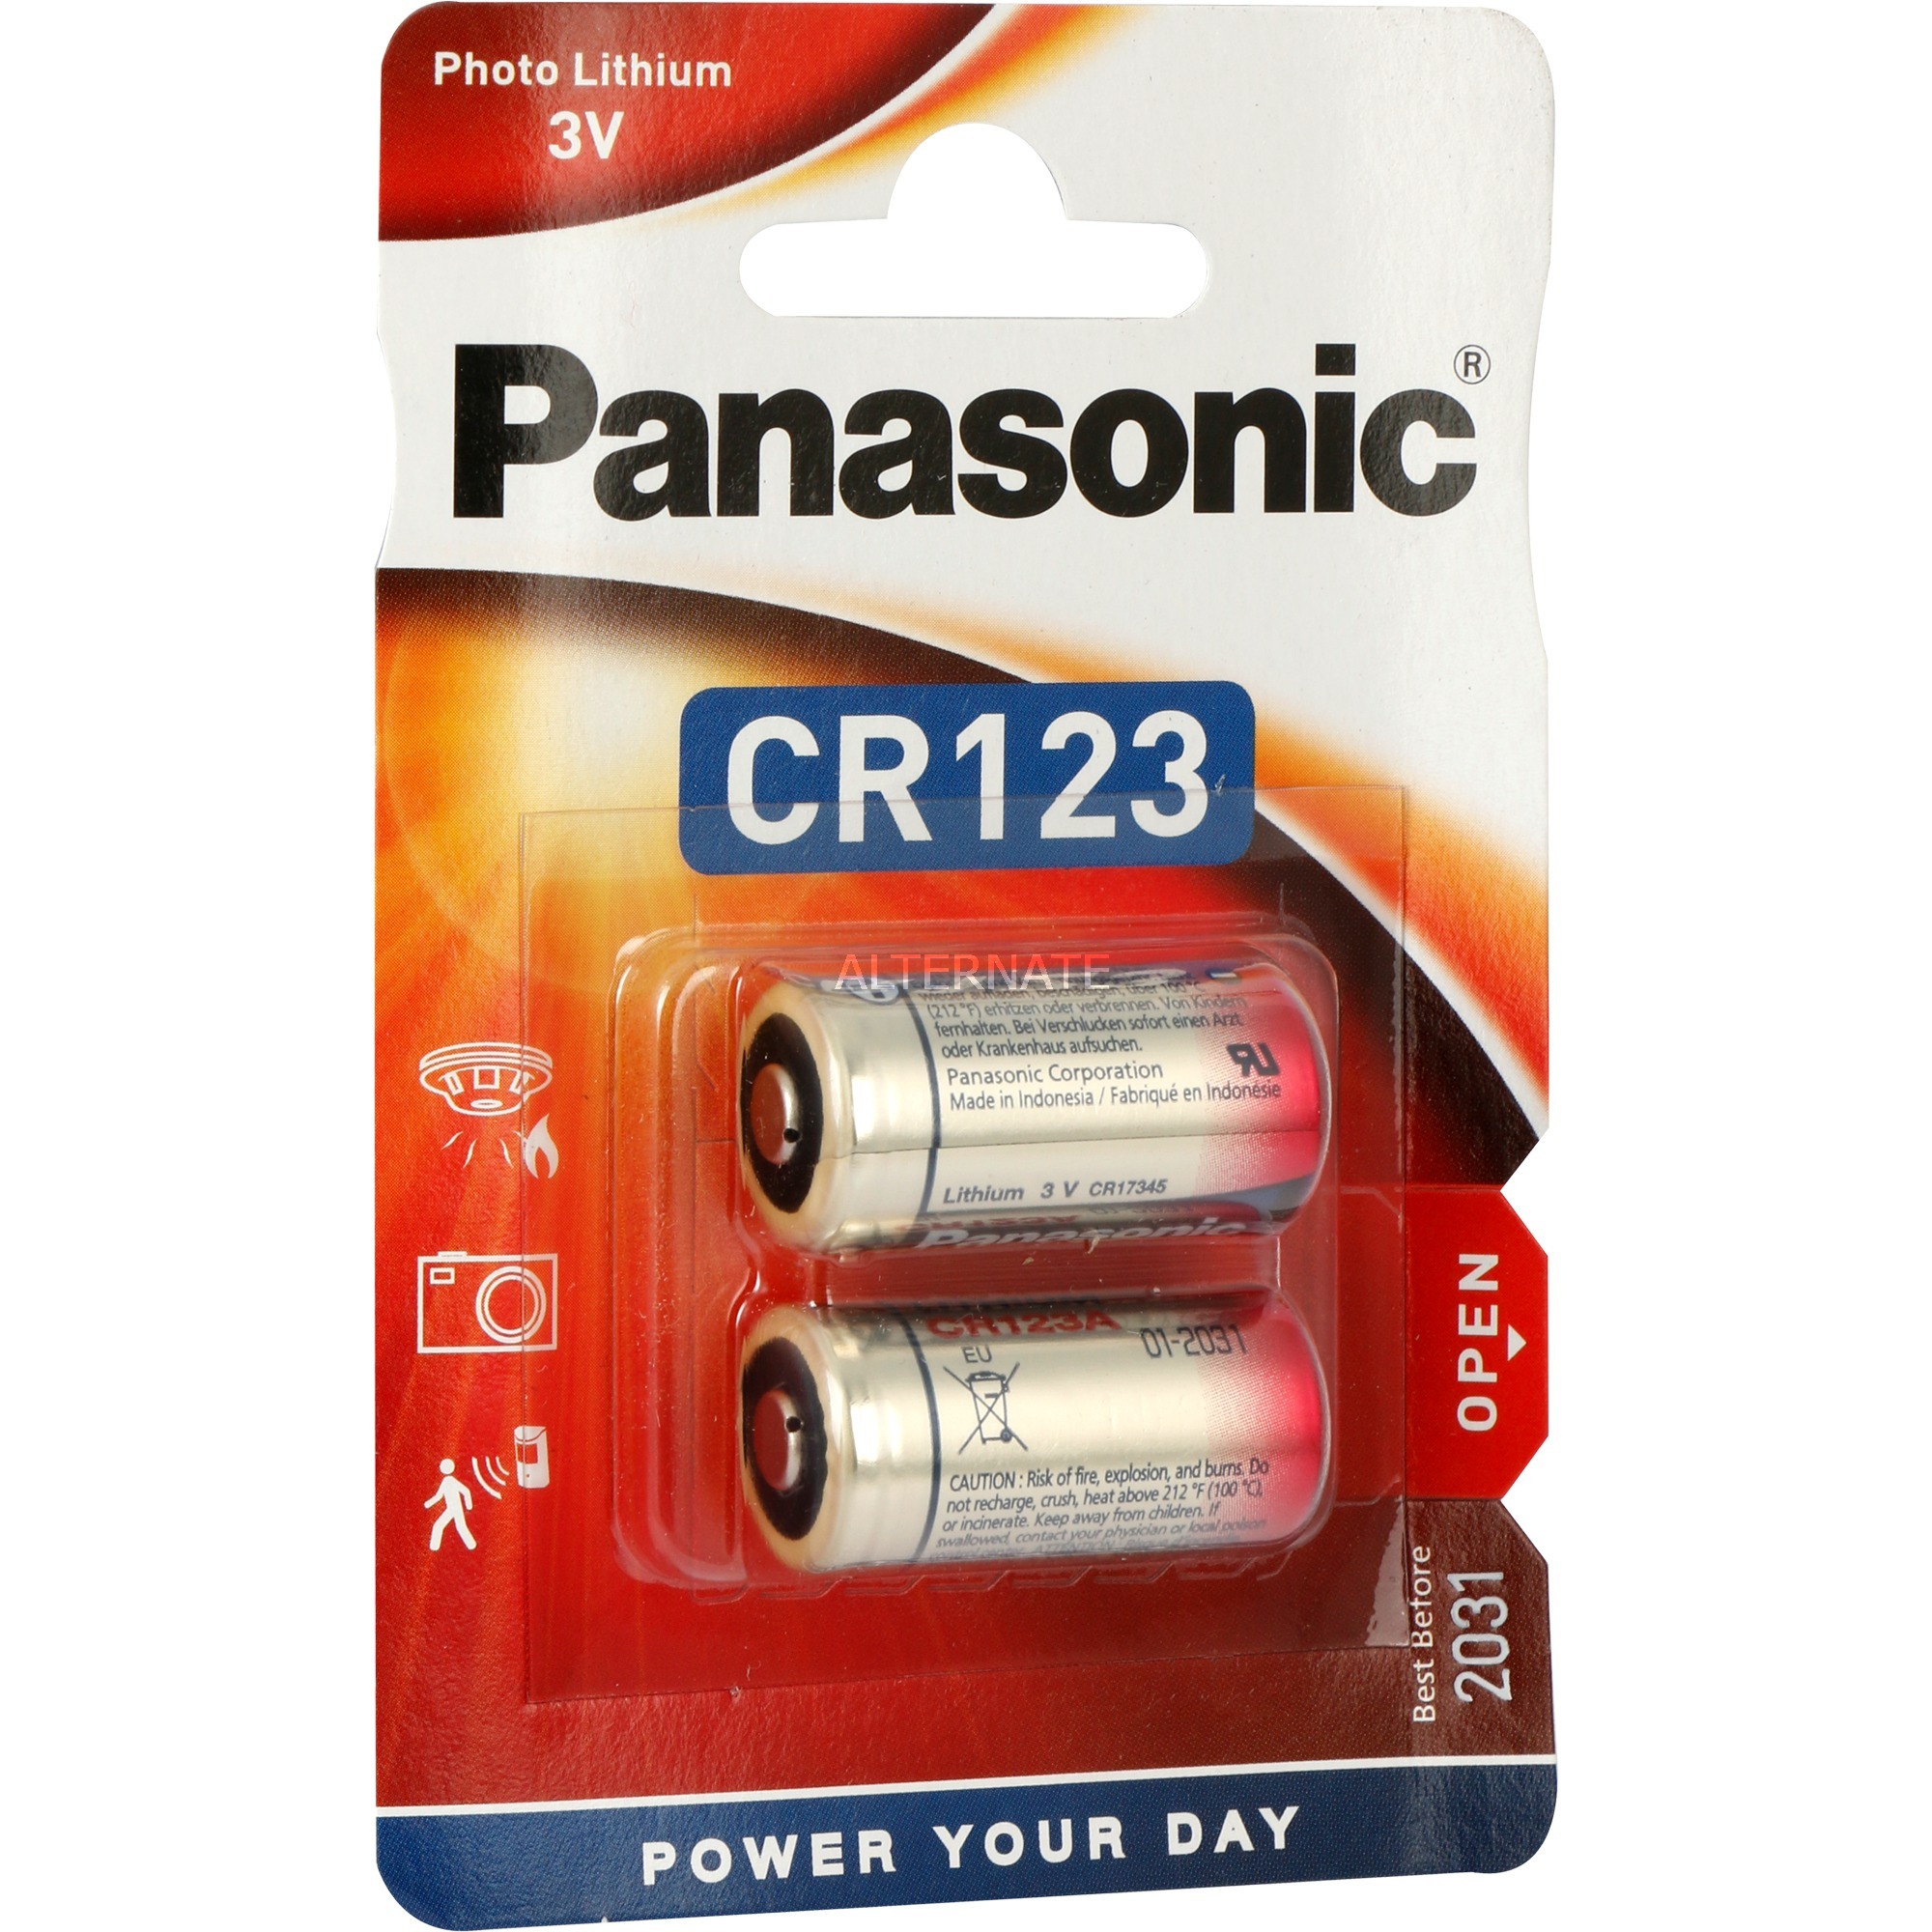 Image of Alternate - Lithium Photo CR-123AL/2BP, Batterie online einkaufen bei Alternate